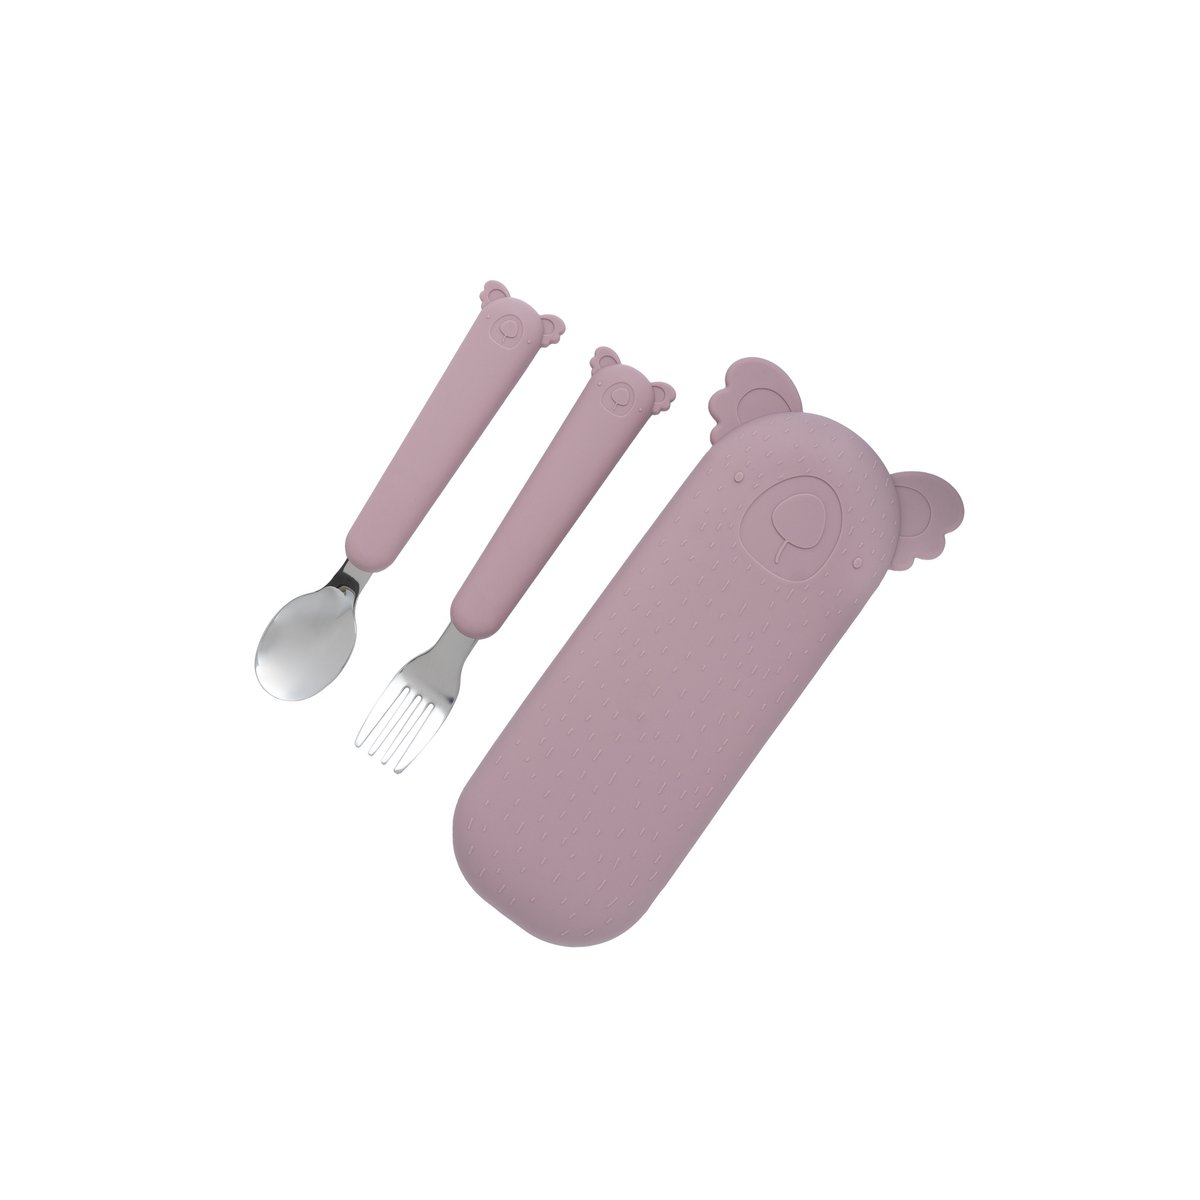 Zoe the Koala Cutlery Set and Case in Dusty Pink